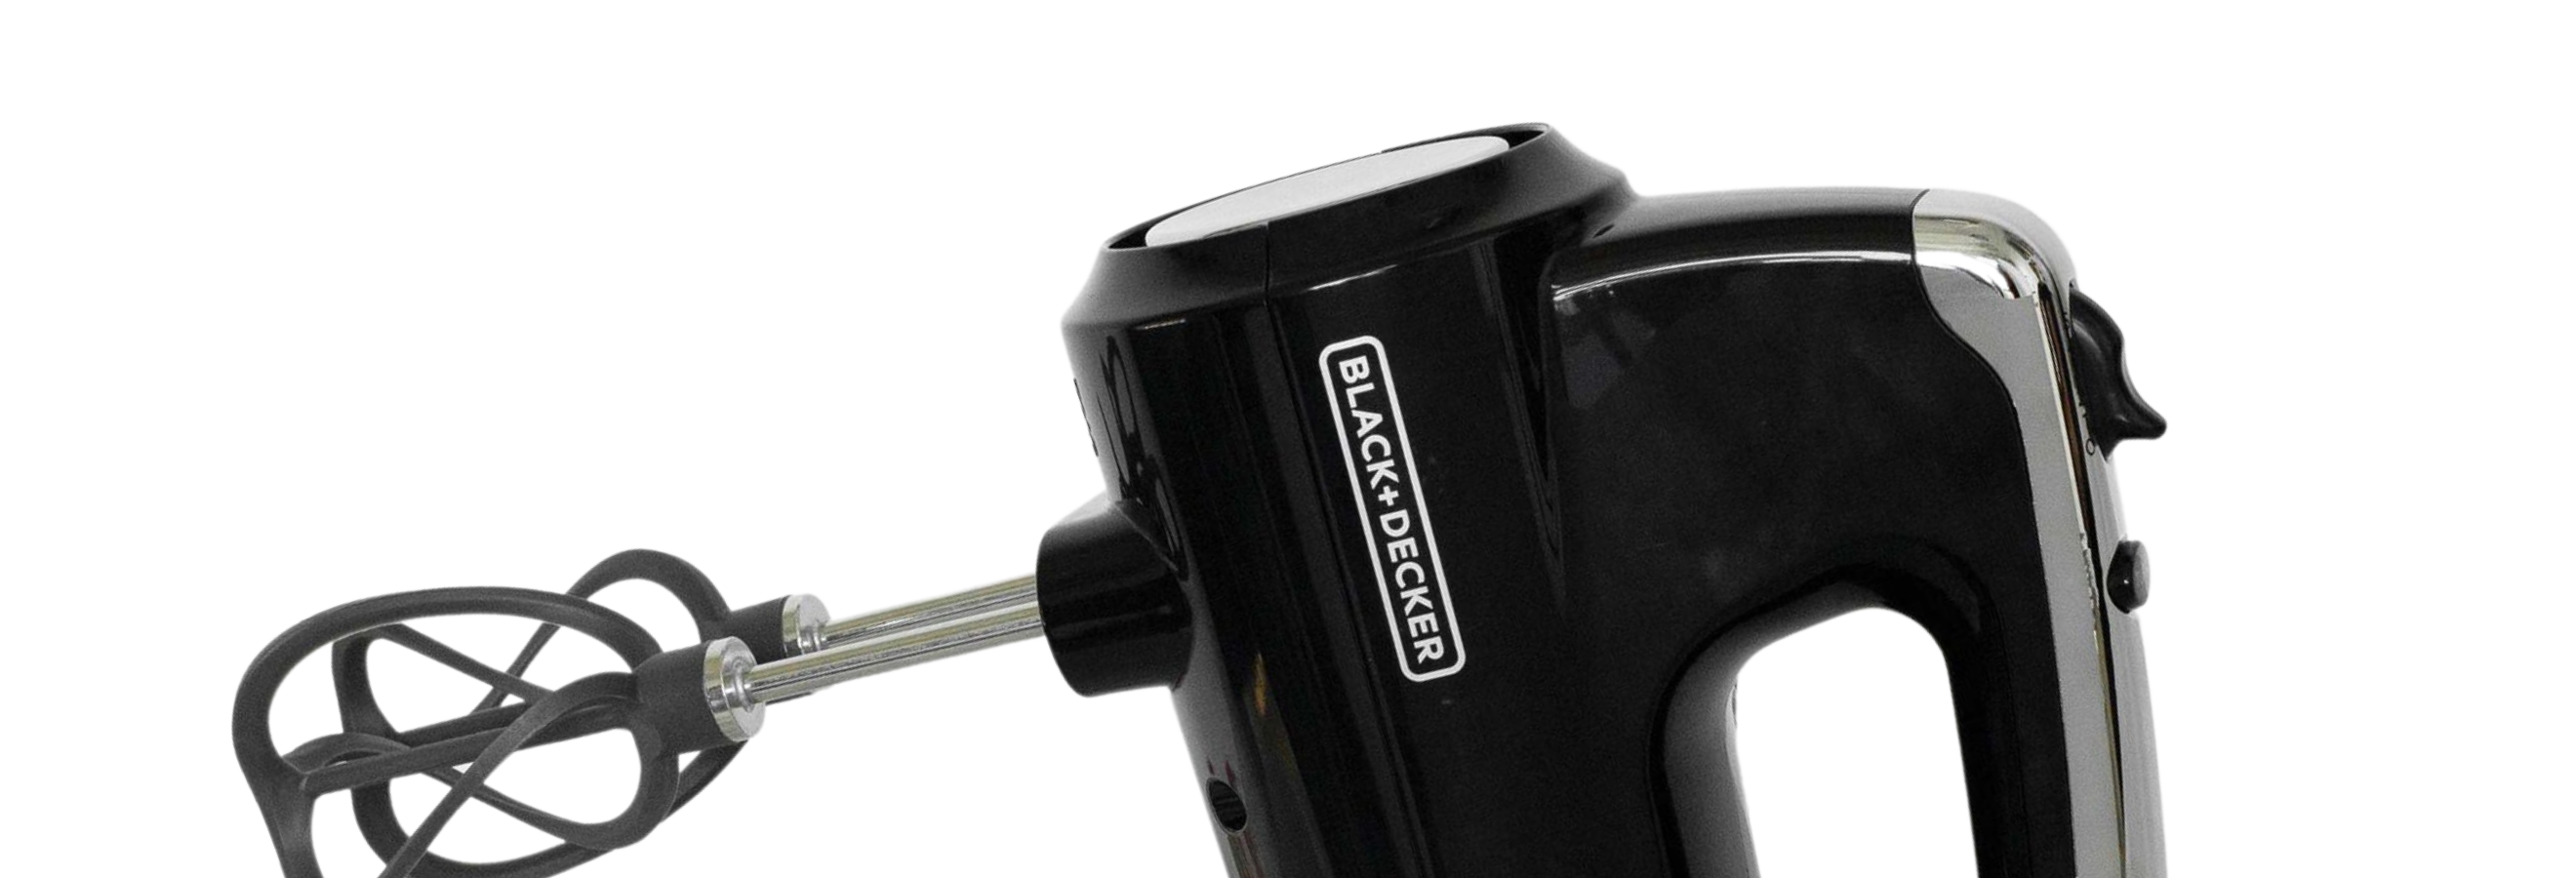  BLACK+DECKER MX600B Helix Performance Premium 5-Speed Hand Mixer,  5 Attachments + Case, Black: Home & Kitchen